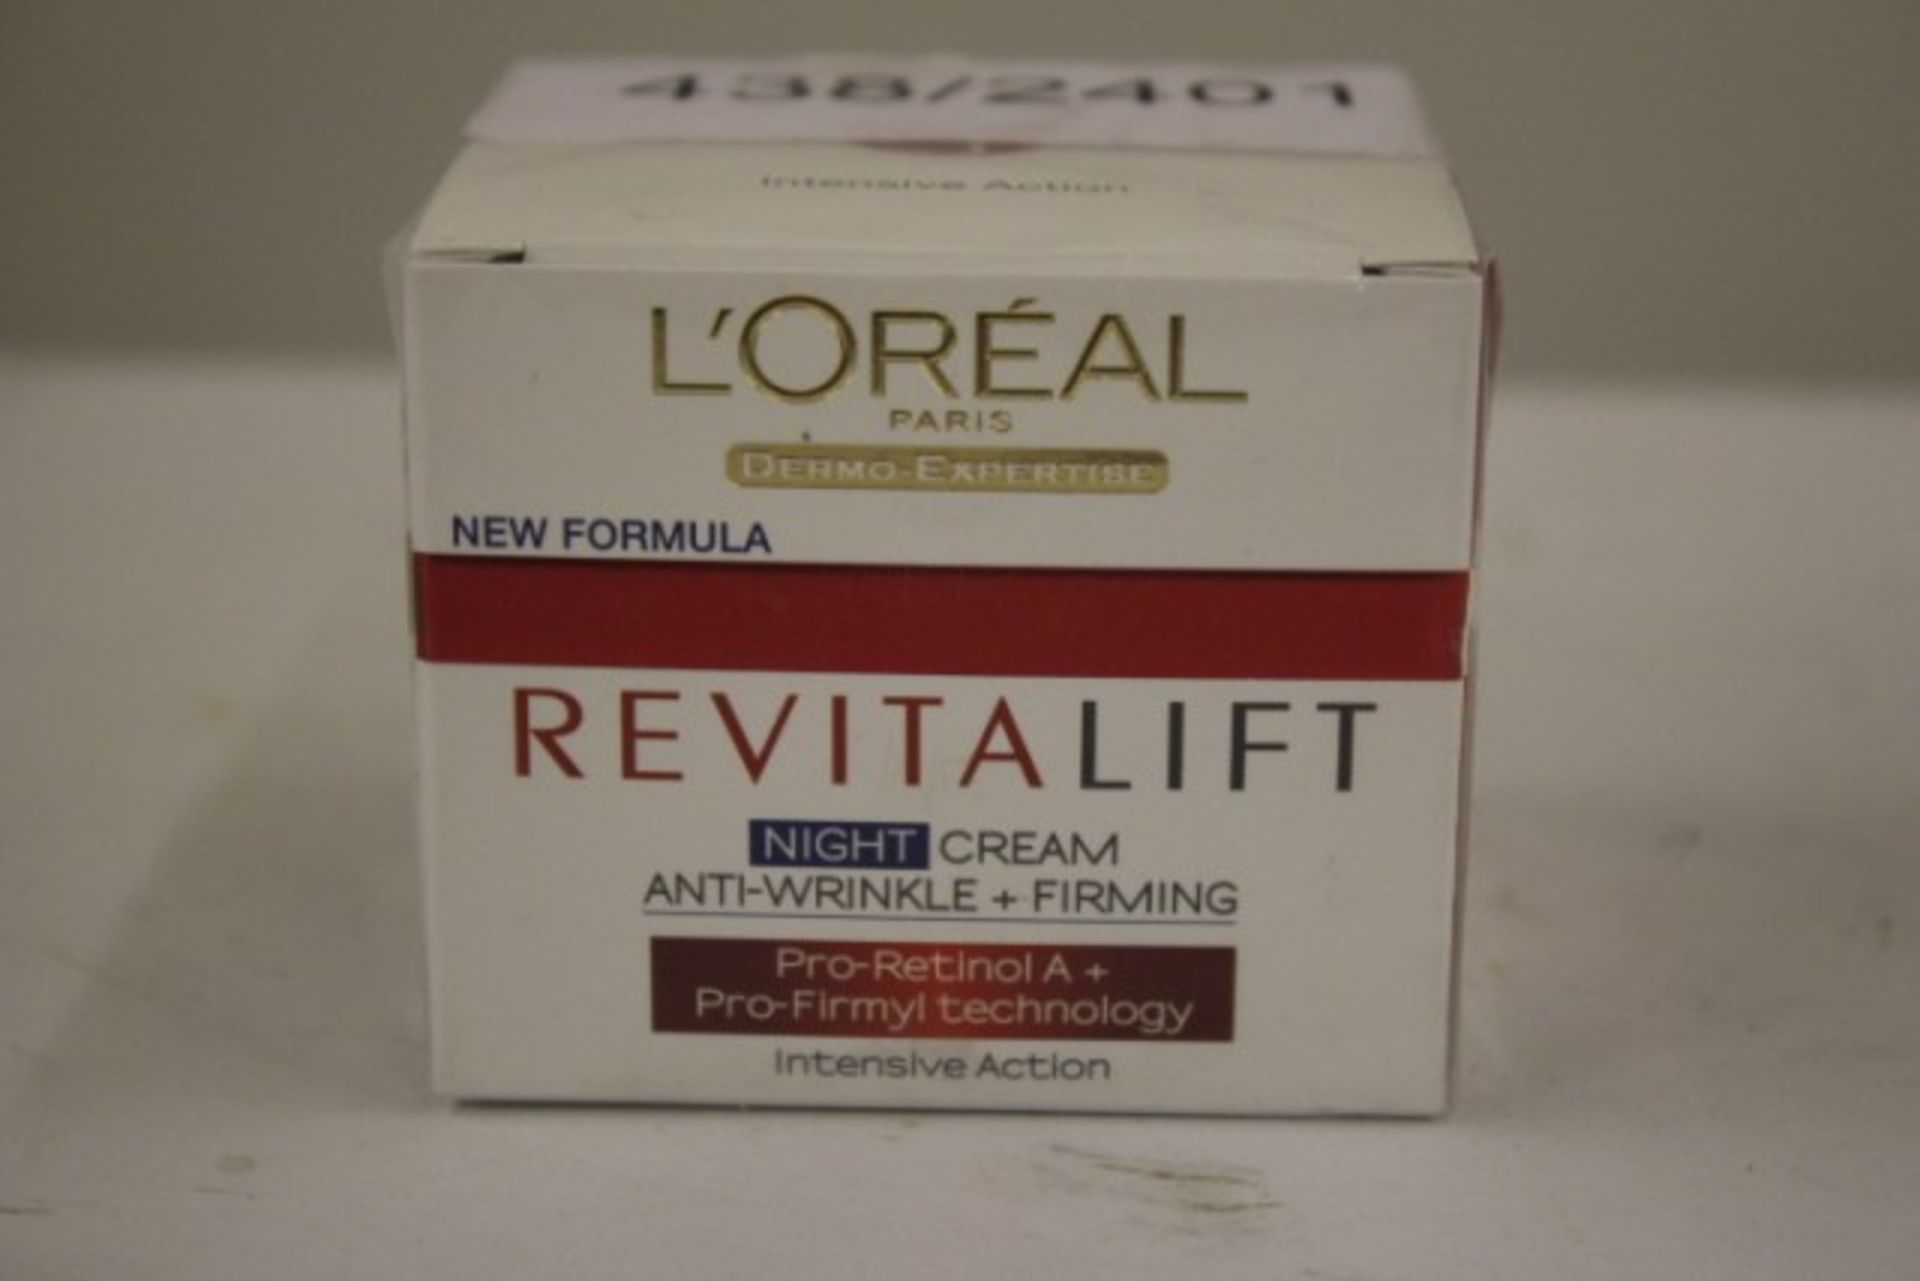 V Brand New L'Oreal Dermo-Expertise Revitalift Anti-Wrinkle + Firming Night Cream 50ml ISP £11.60 (